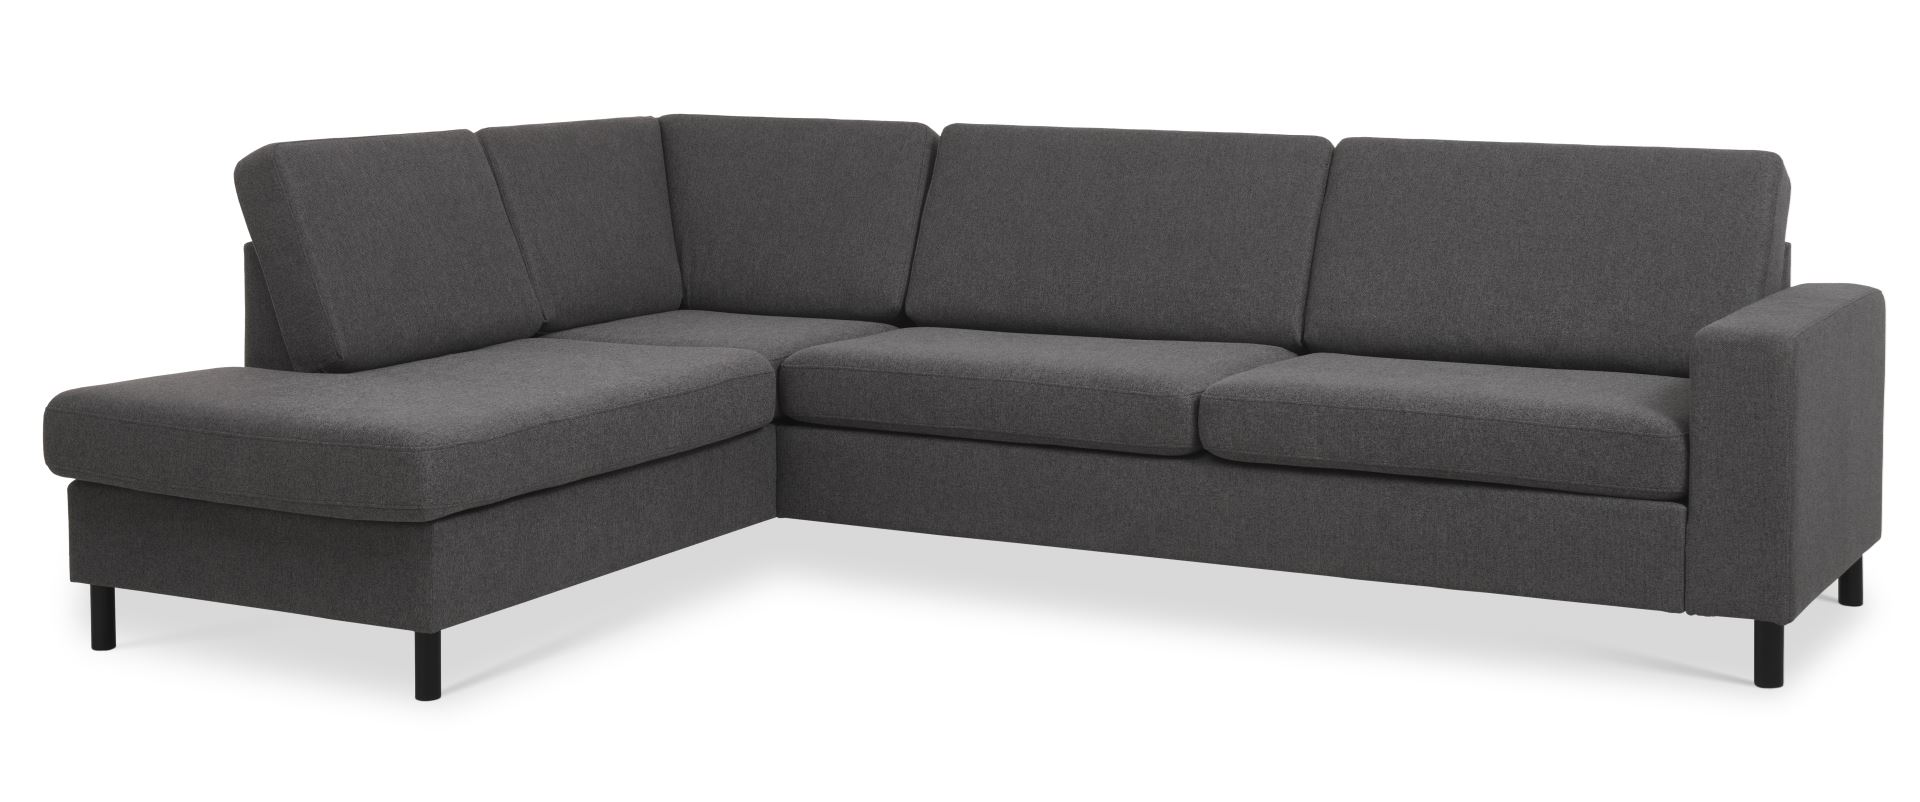 Pan set 2 OE left sofa med chaiselong - antracitgrå polyester stof og sort træ